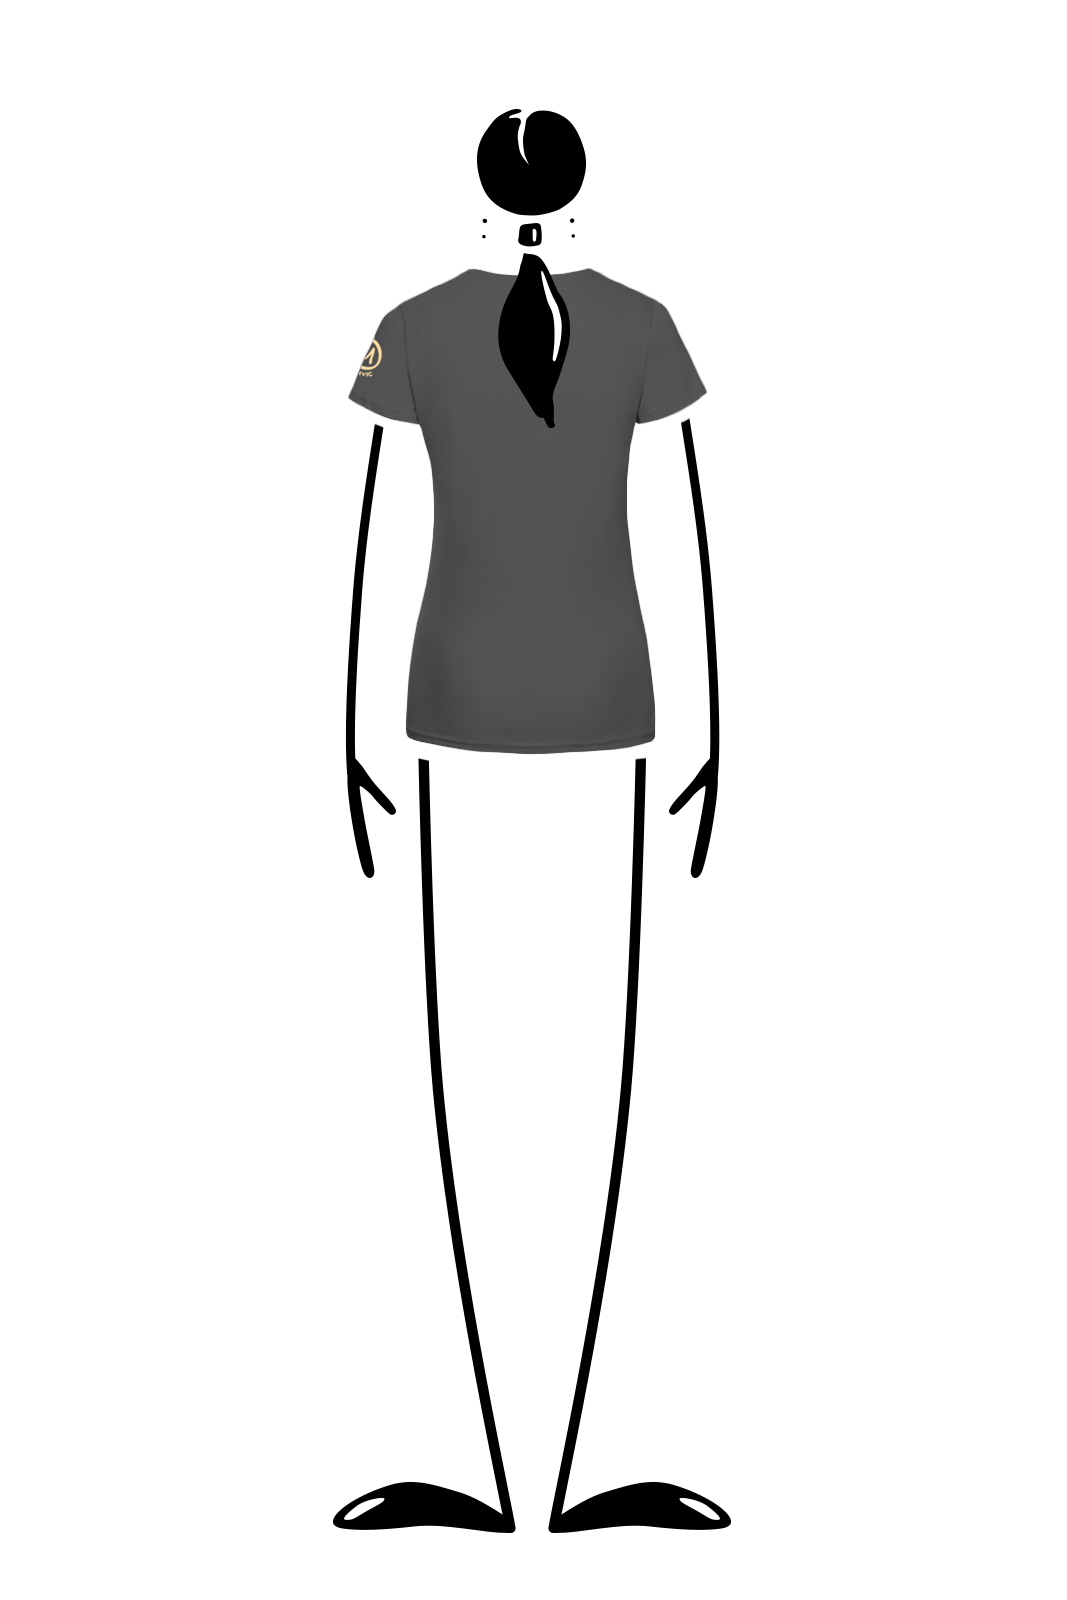 T-shirt femme en coton bio gris carbone SHARON ORGANIC Monvic chevaux